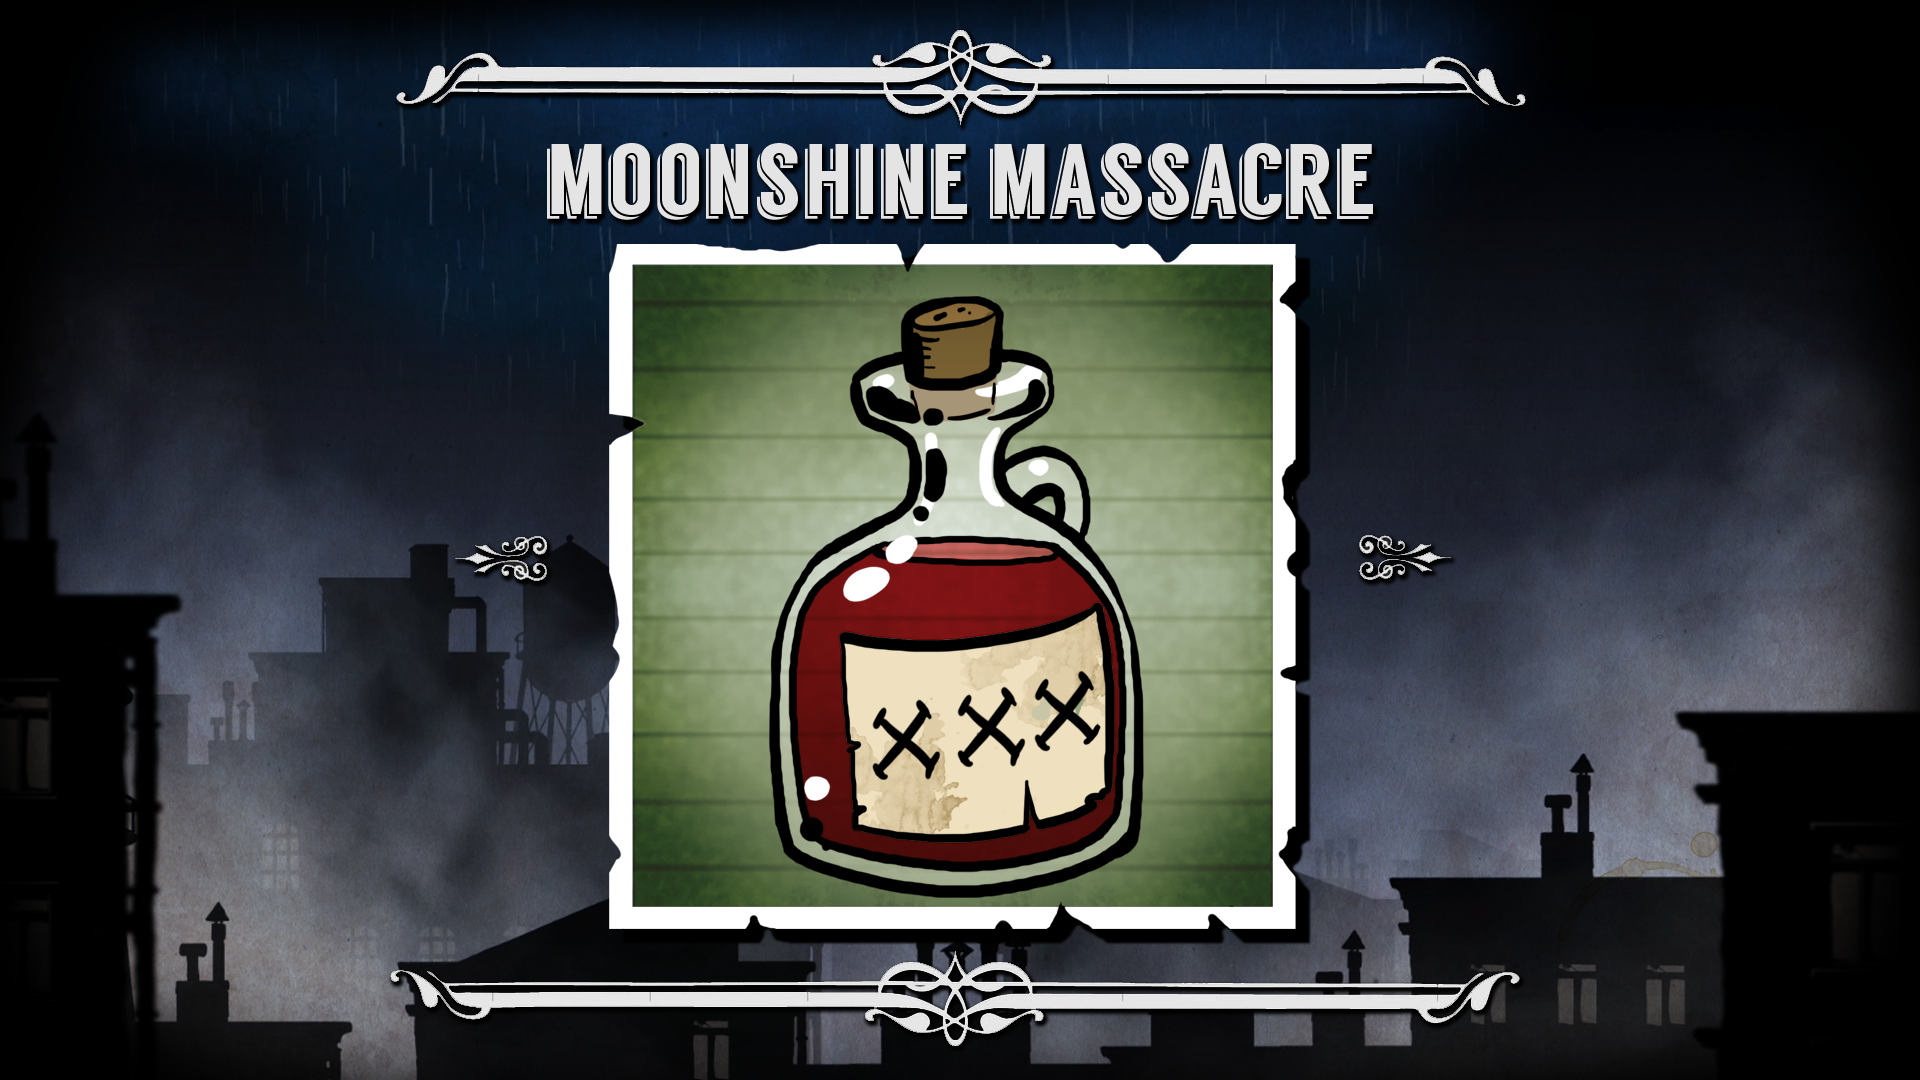 Moonshine Massacre